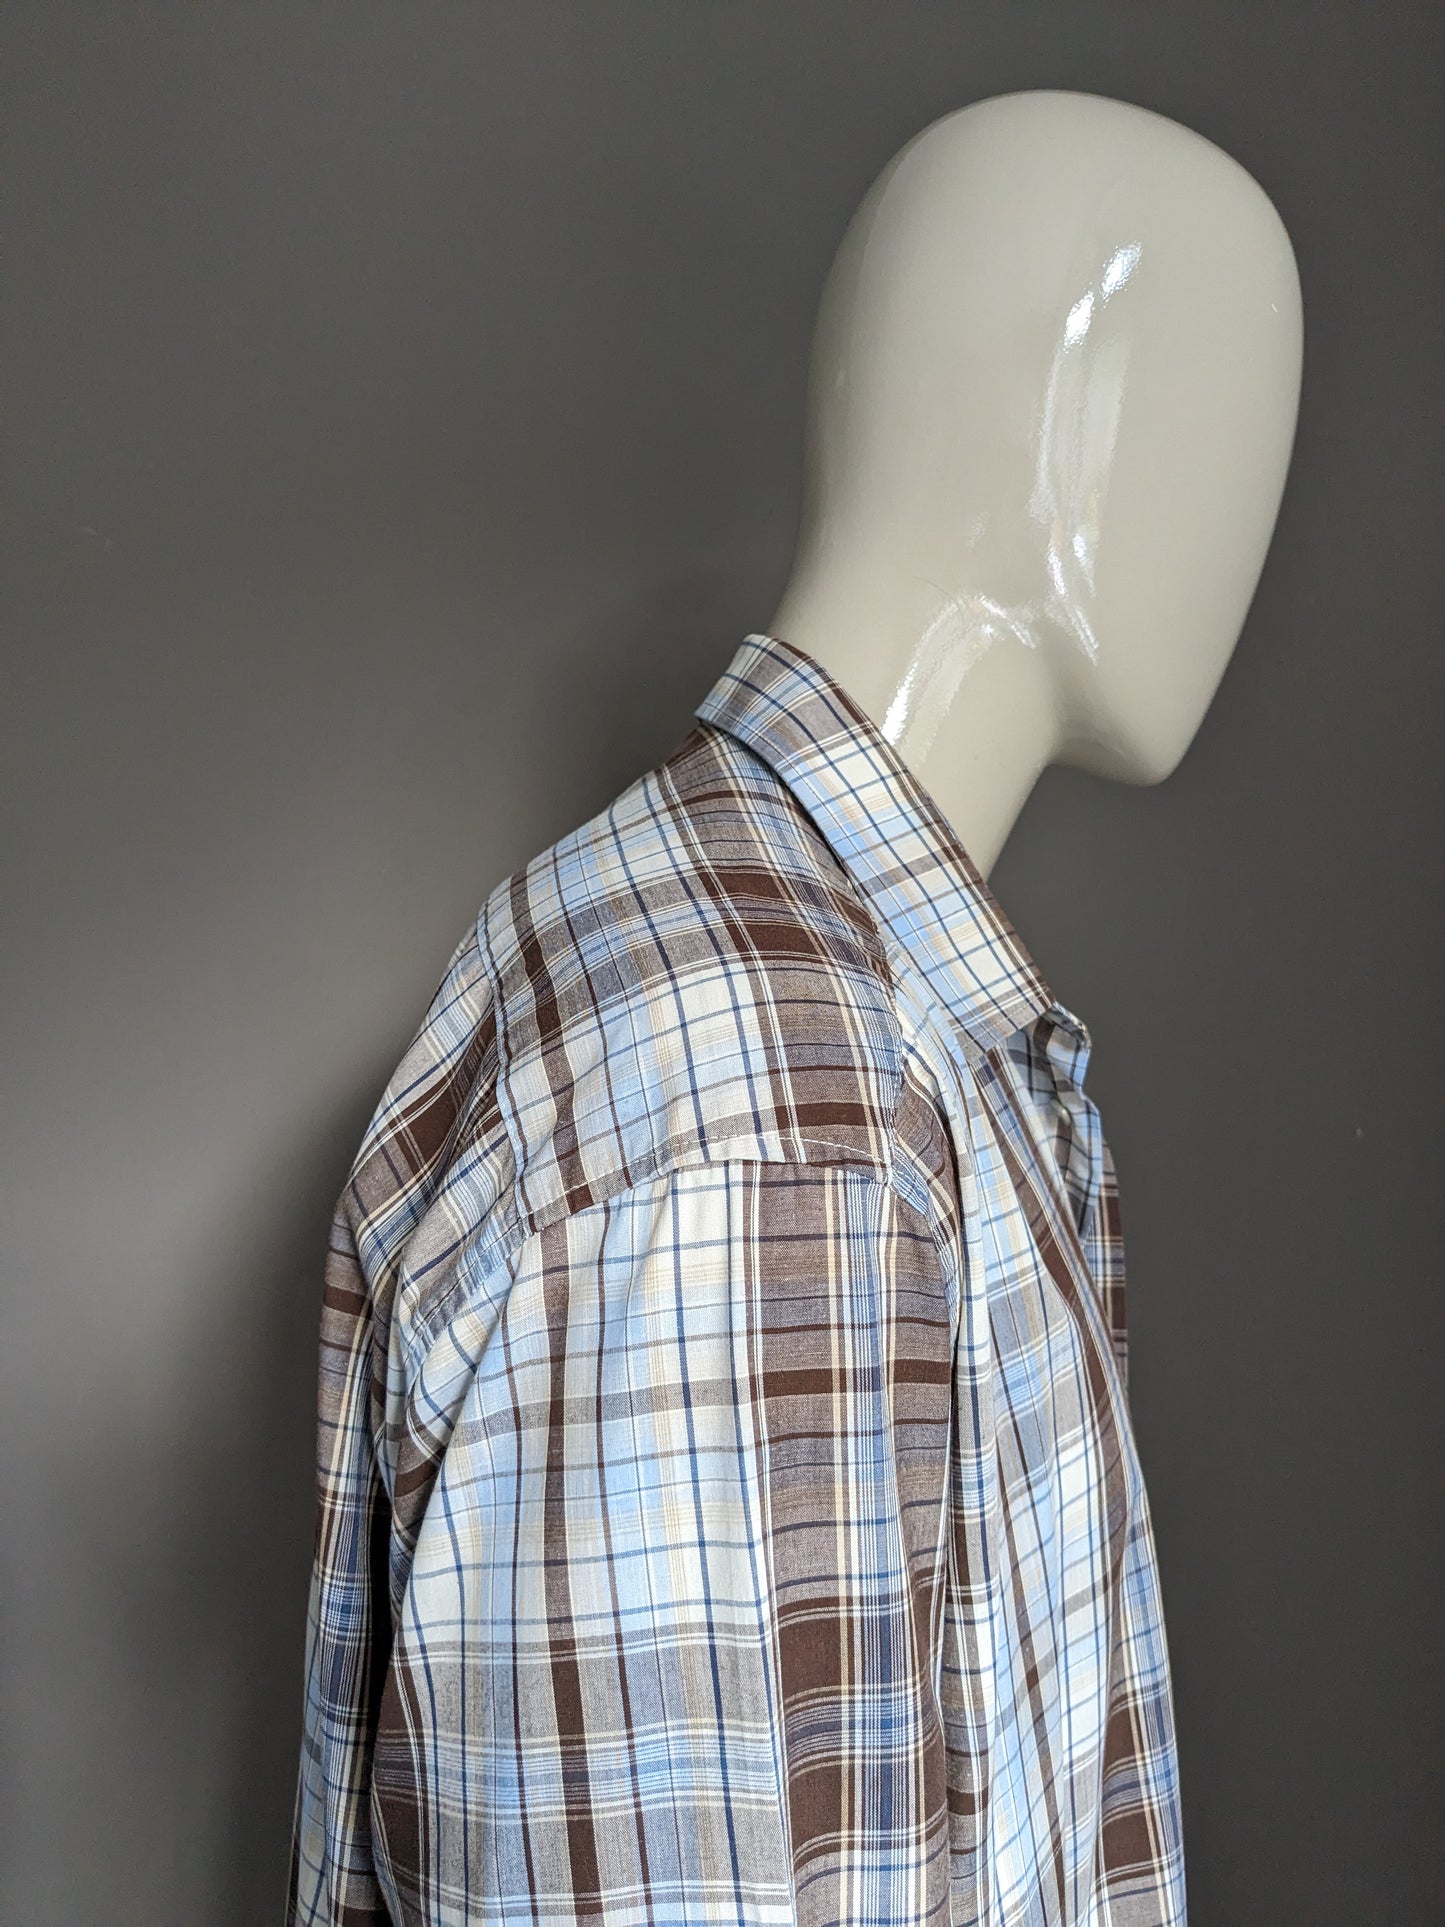 Camisa afilada vintage. Verificador de color beige marrón azul. Tamaño 2xl / 3xl.